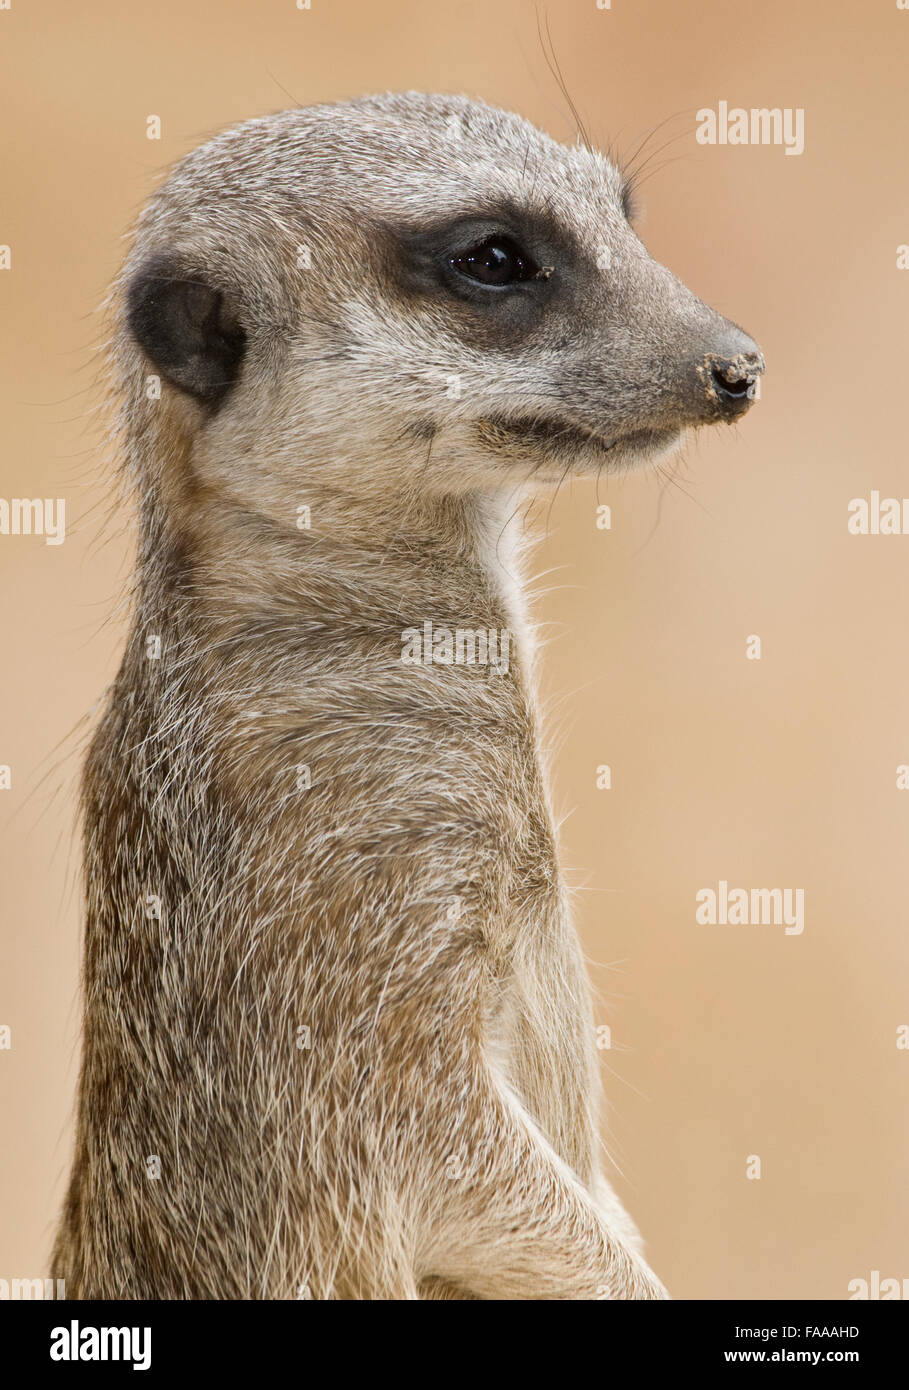 Meerkat close-up Stock Photo